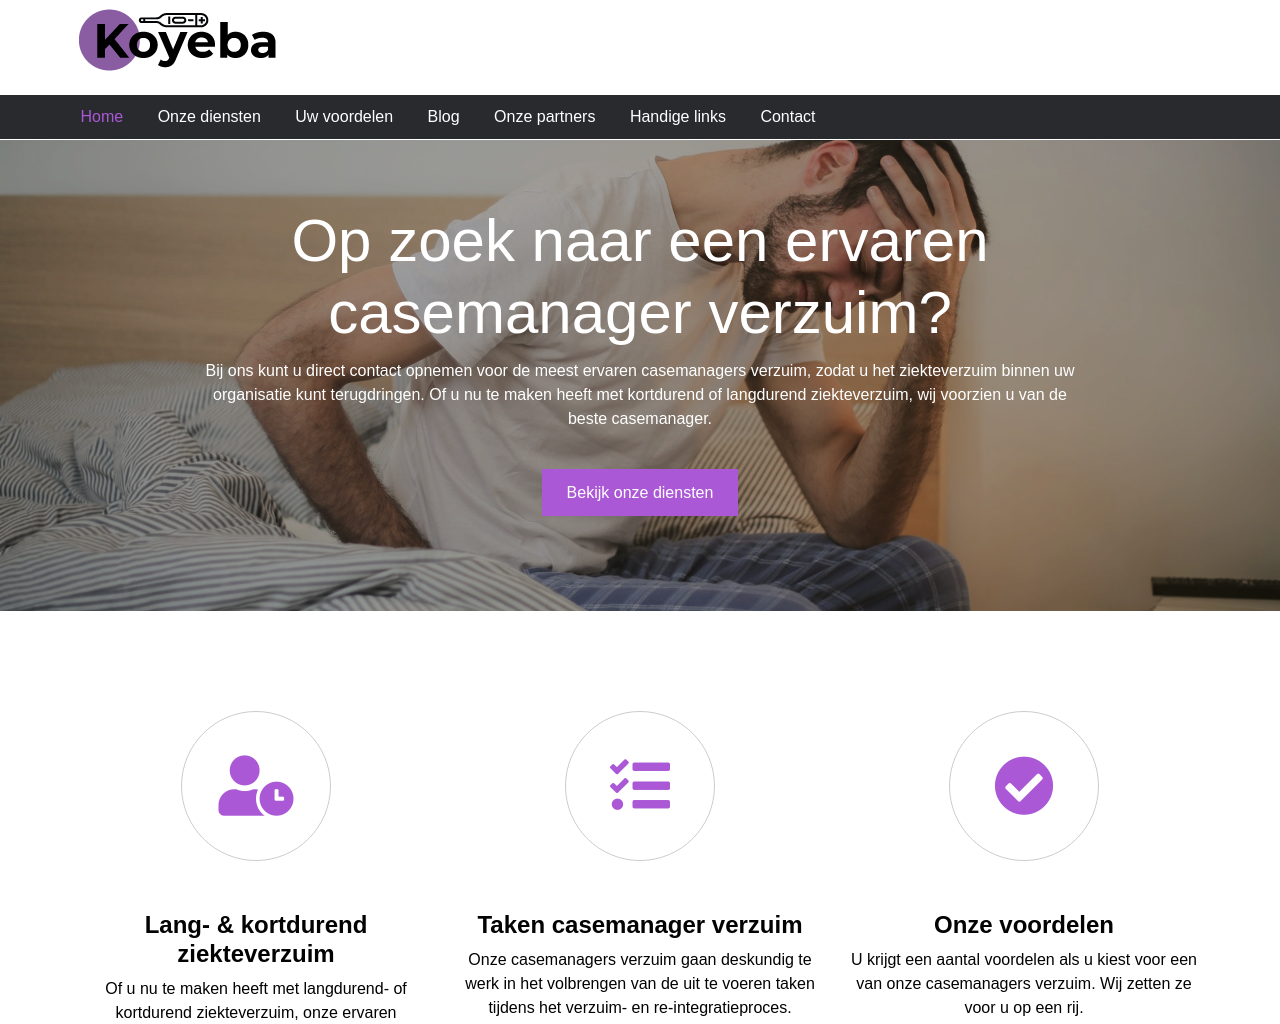 koyeba.nl